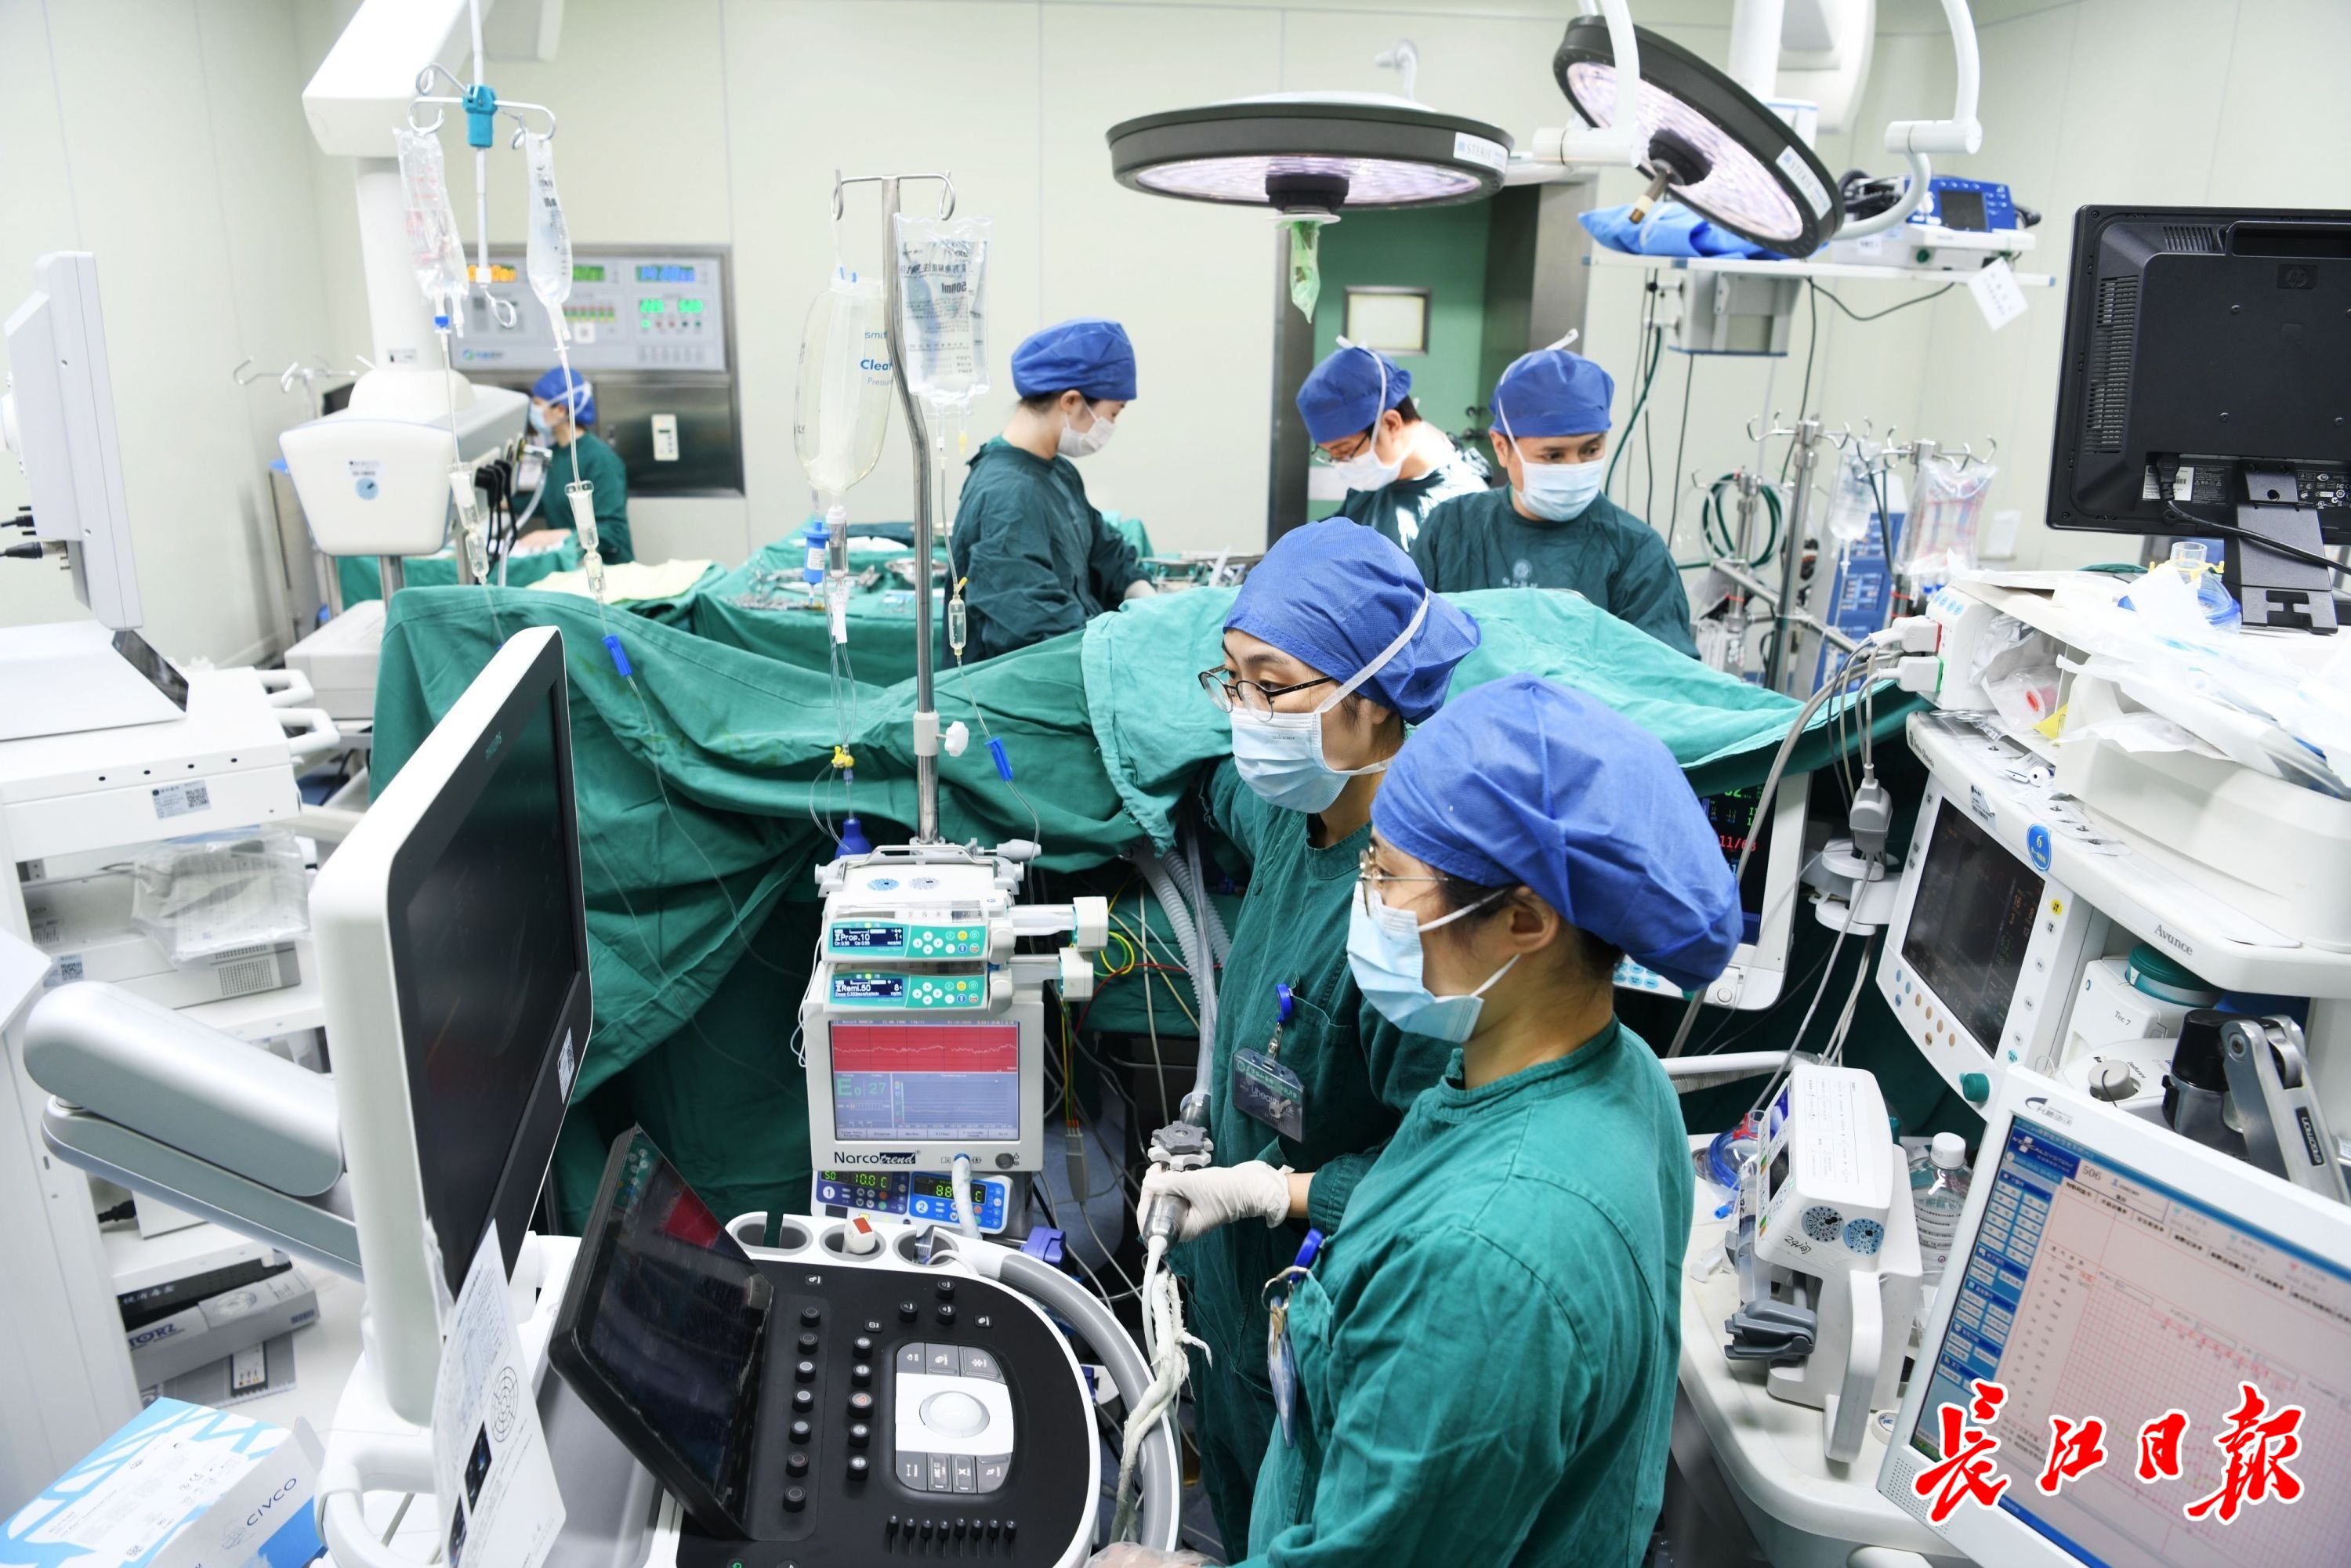 武汉协和医院外科大楼手术室,医护人员在坚守工作岗位